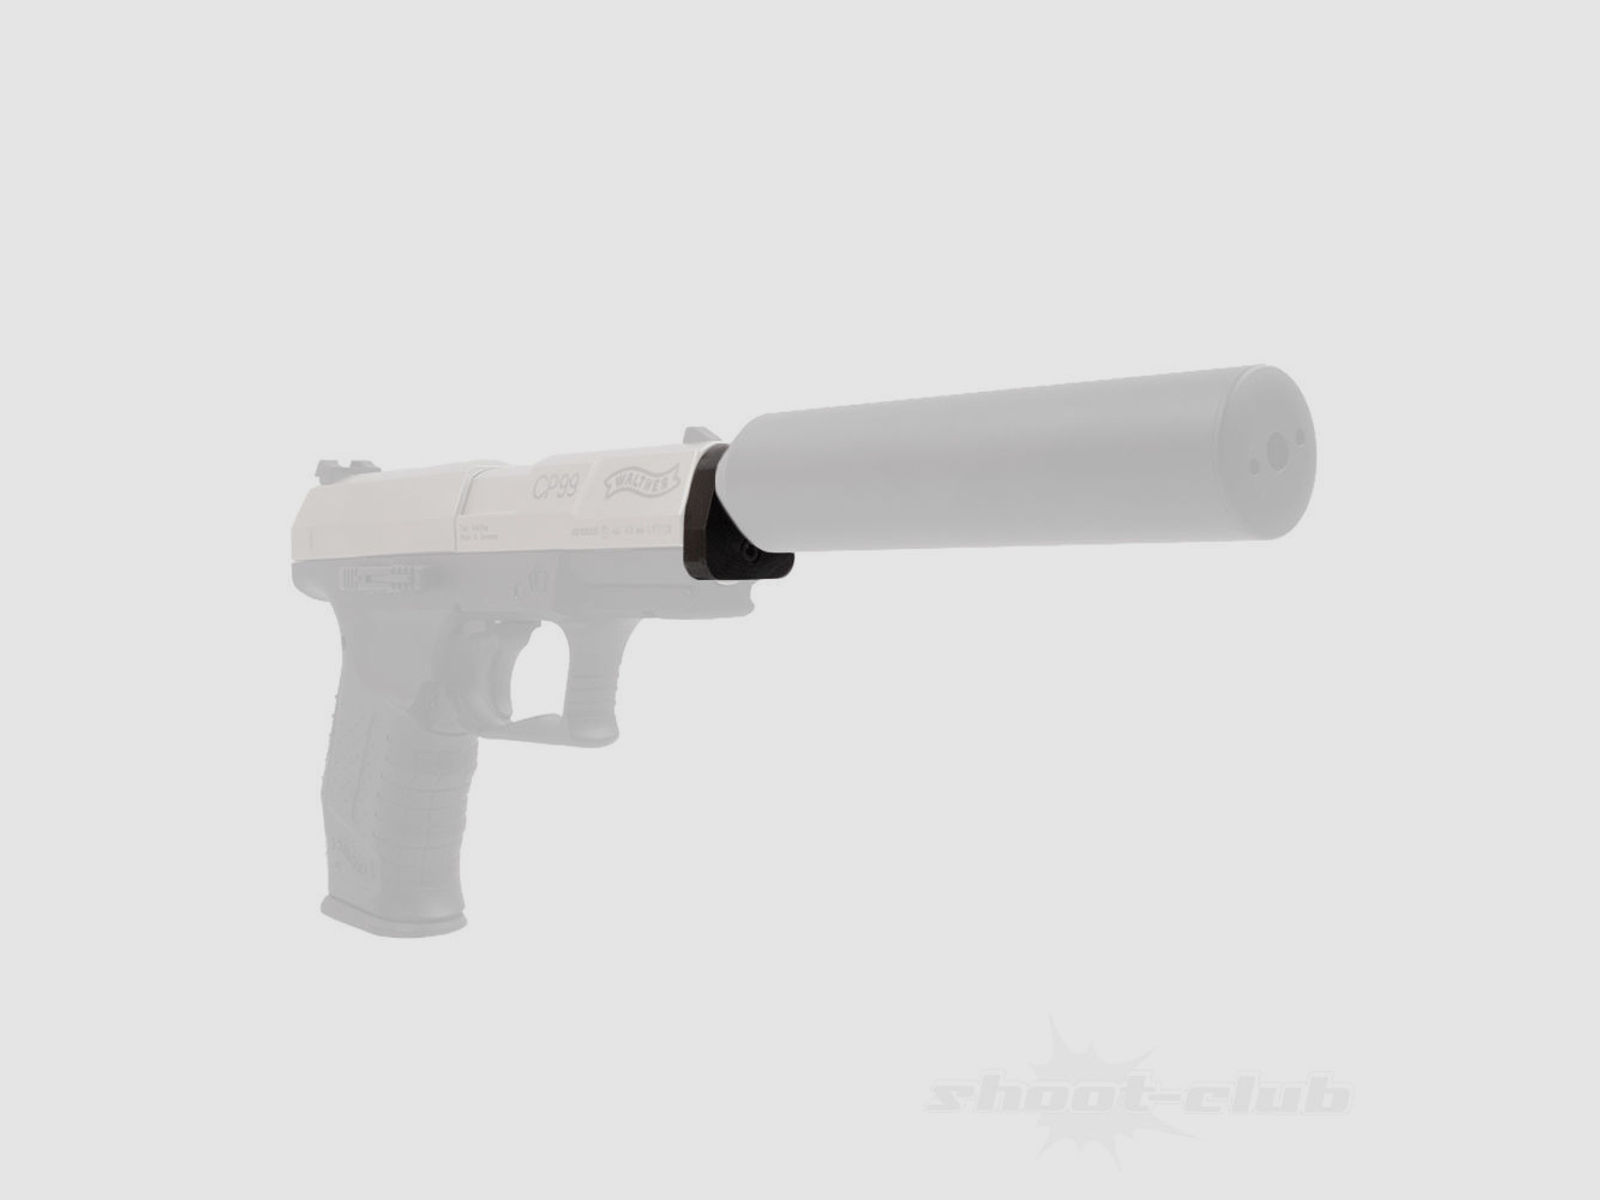 Schalldämpferadapter für Walther CP99, NightHawk, Umarex CPS CO2 Pistole - 1/2"UNF